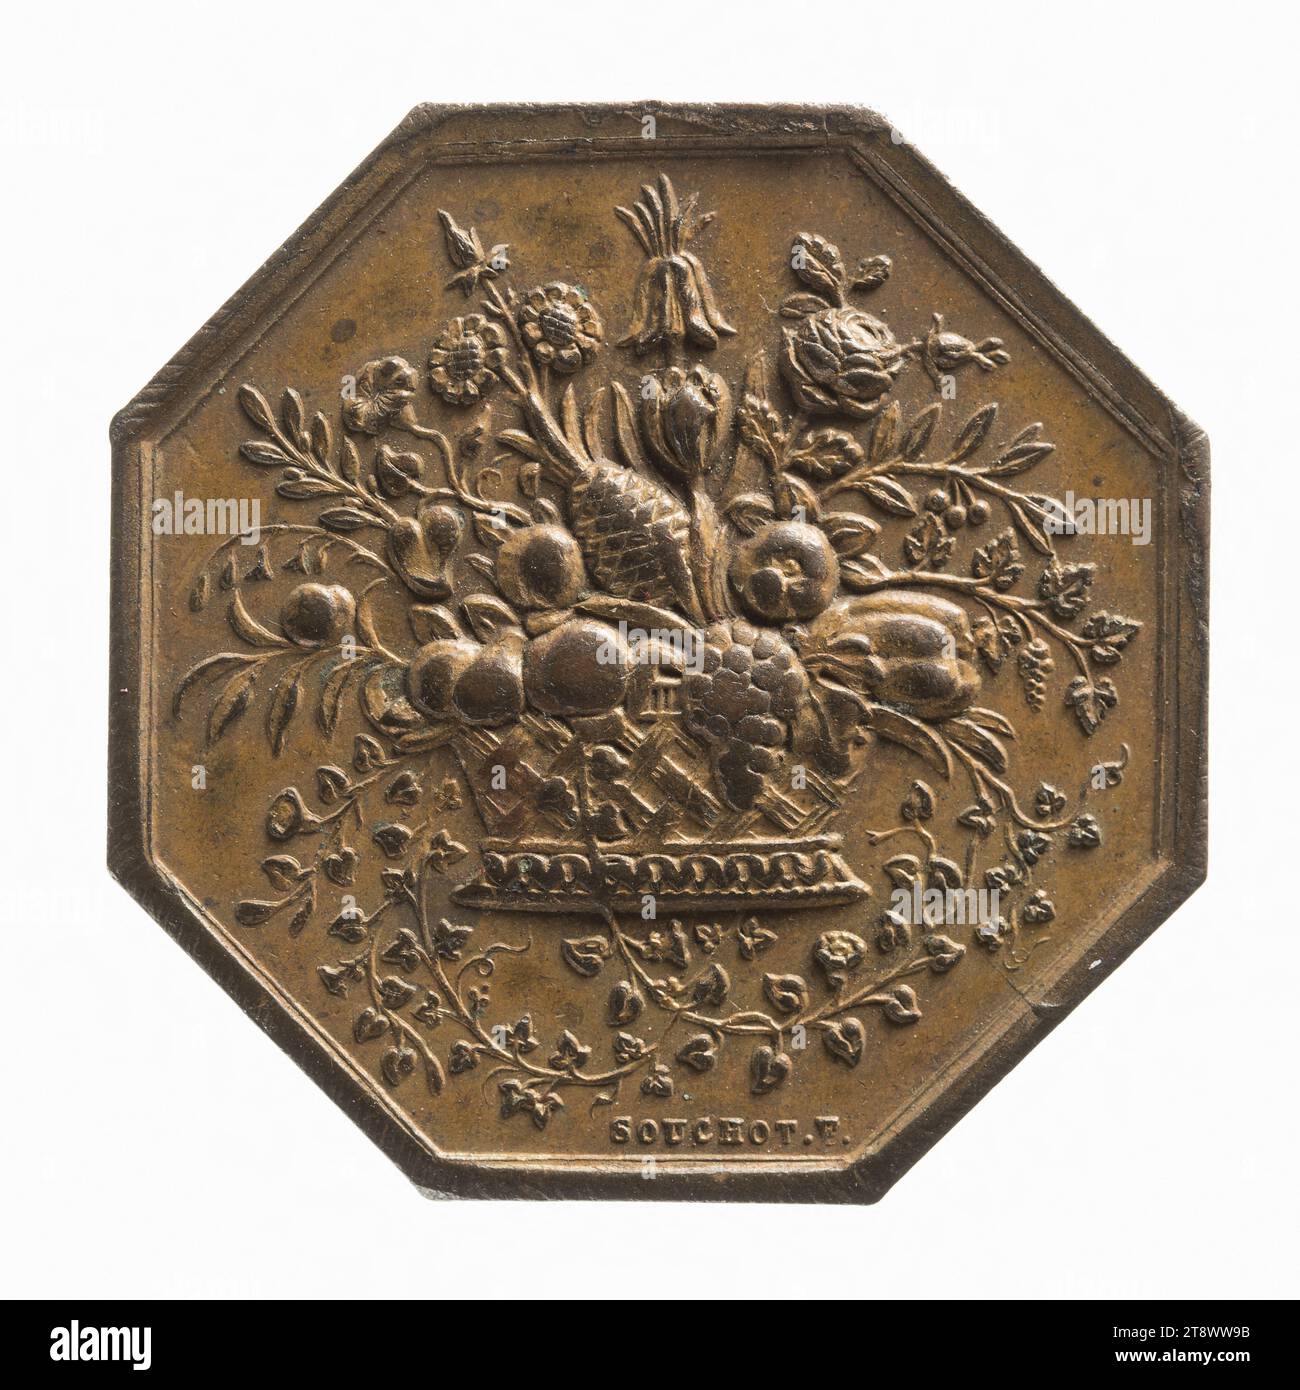 Société nationale d'garticulture de la seine, 1841, Bescher, Auguste, Gravierer in Medaillen, in 1841, Numismatik, Token (Numismatik), Kupfer, Abmessungen - Werk: Durchmesser: 2,9 cm, Gewicht (Typenmaß): 10,74 g Stockfoto